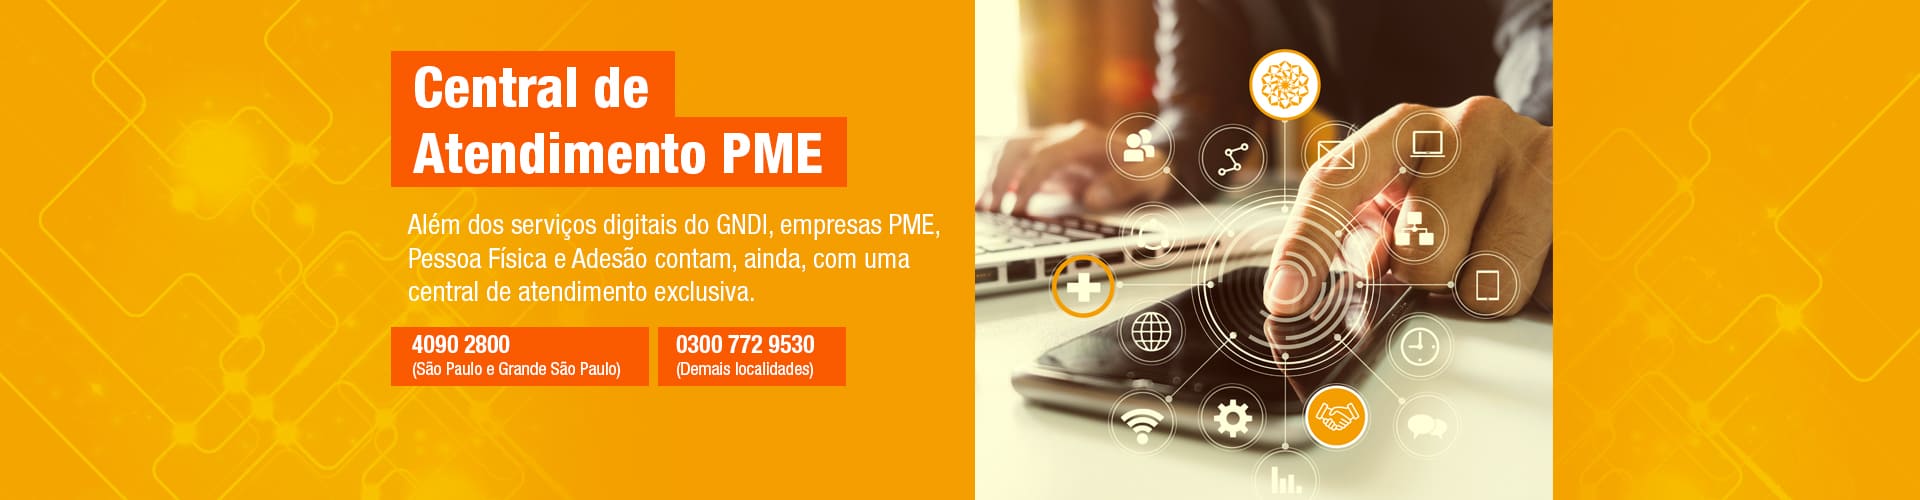 Além dos serviços digitais do GNDI, empresas PME contam com uma central de atendimento exclusiva.